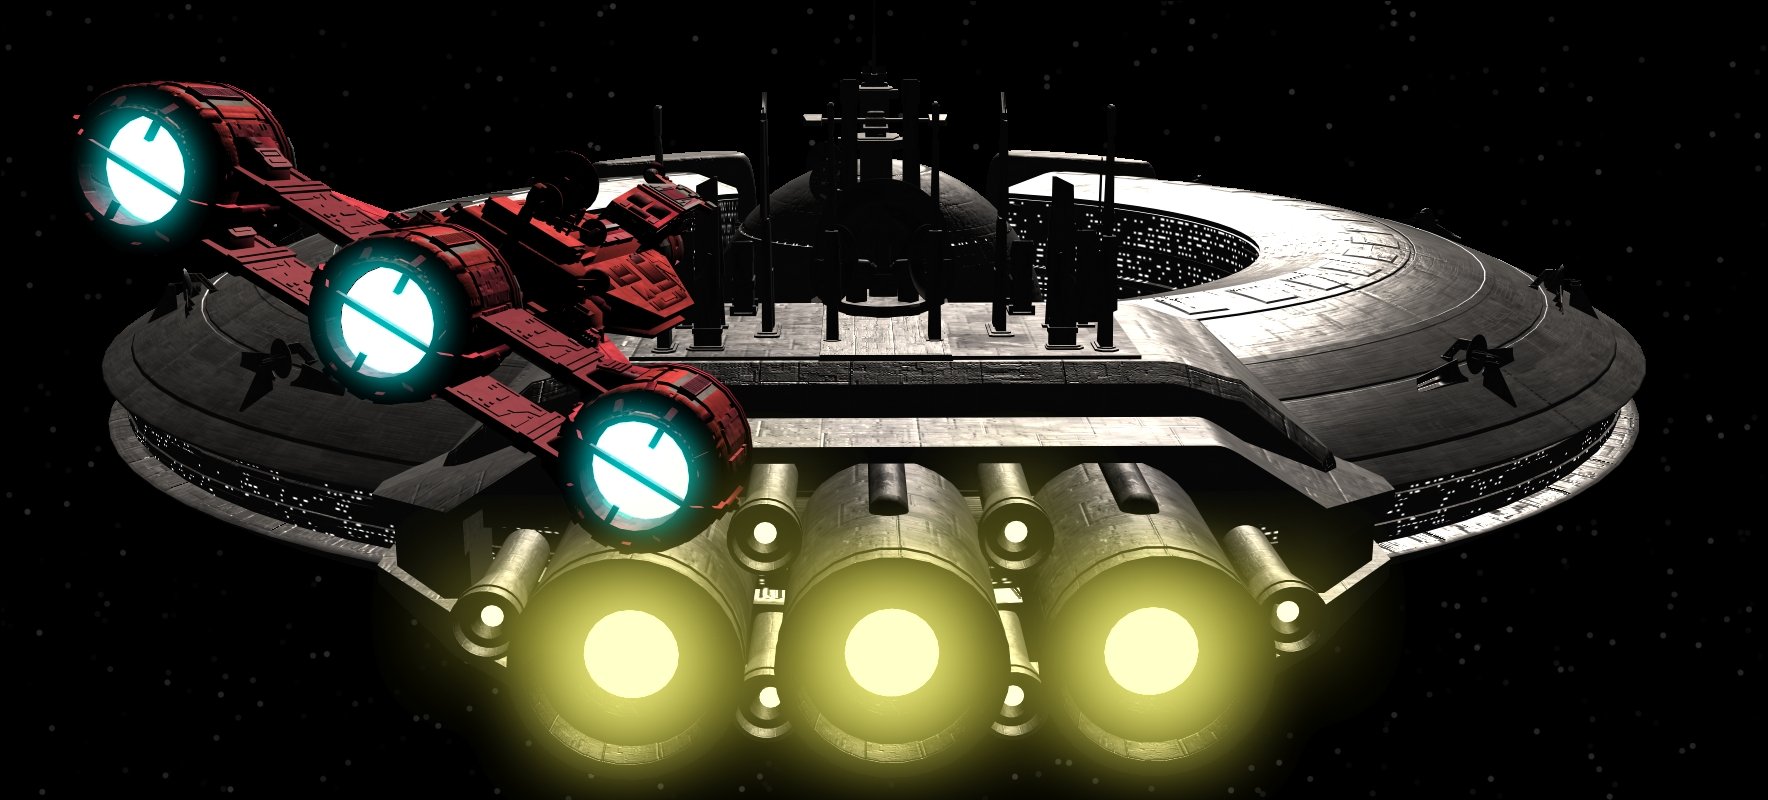 Vaisseau spatiaux star wars avec effet de réacteur glow, rendu avec 3D Studio Max